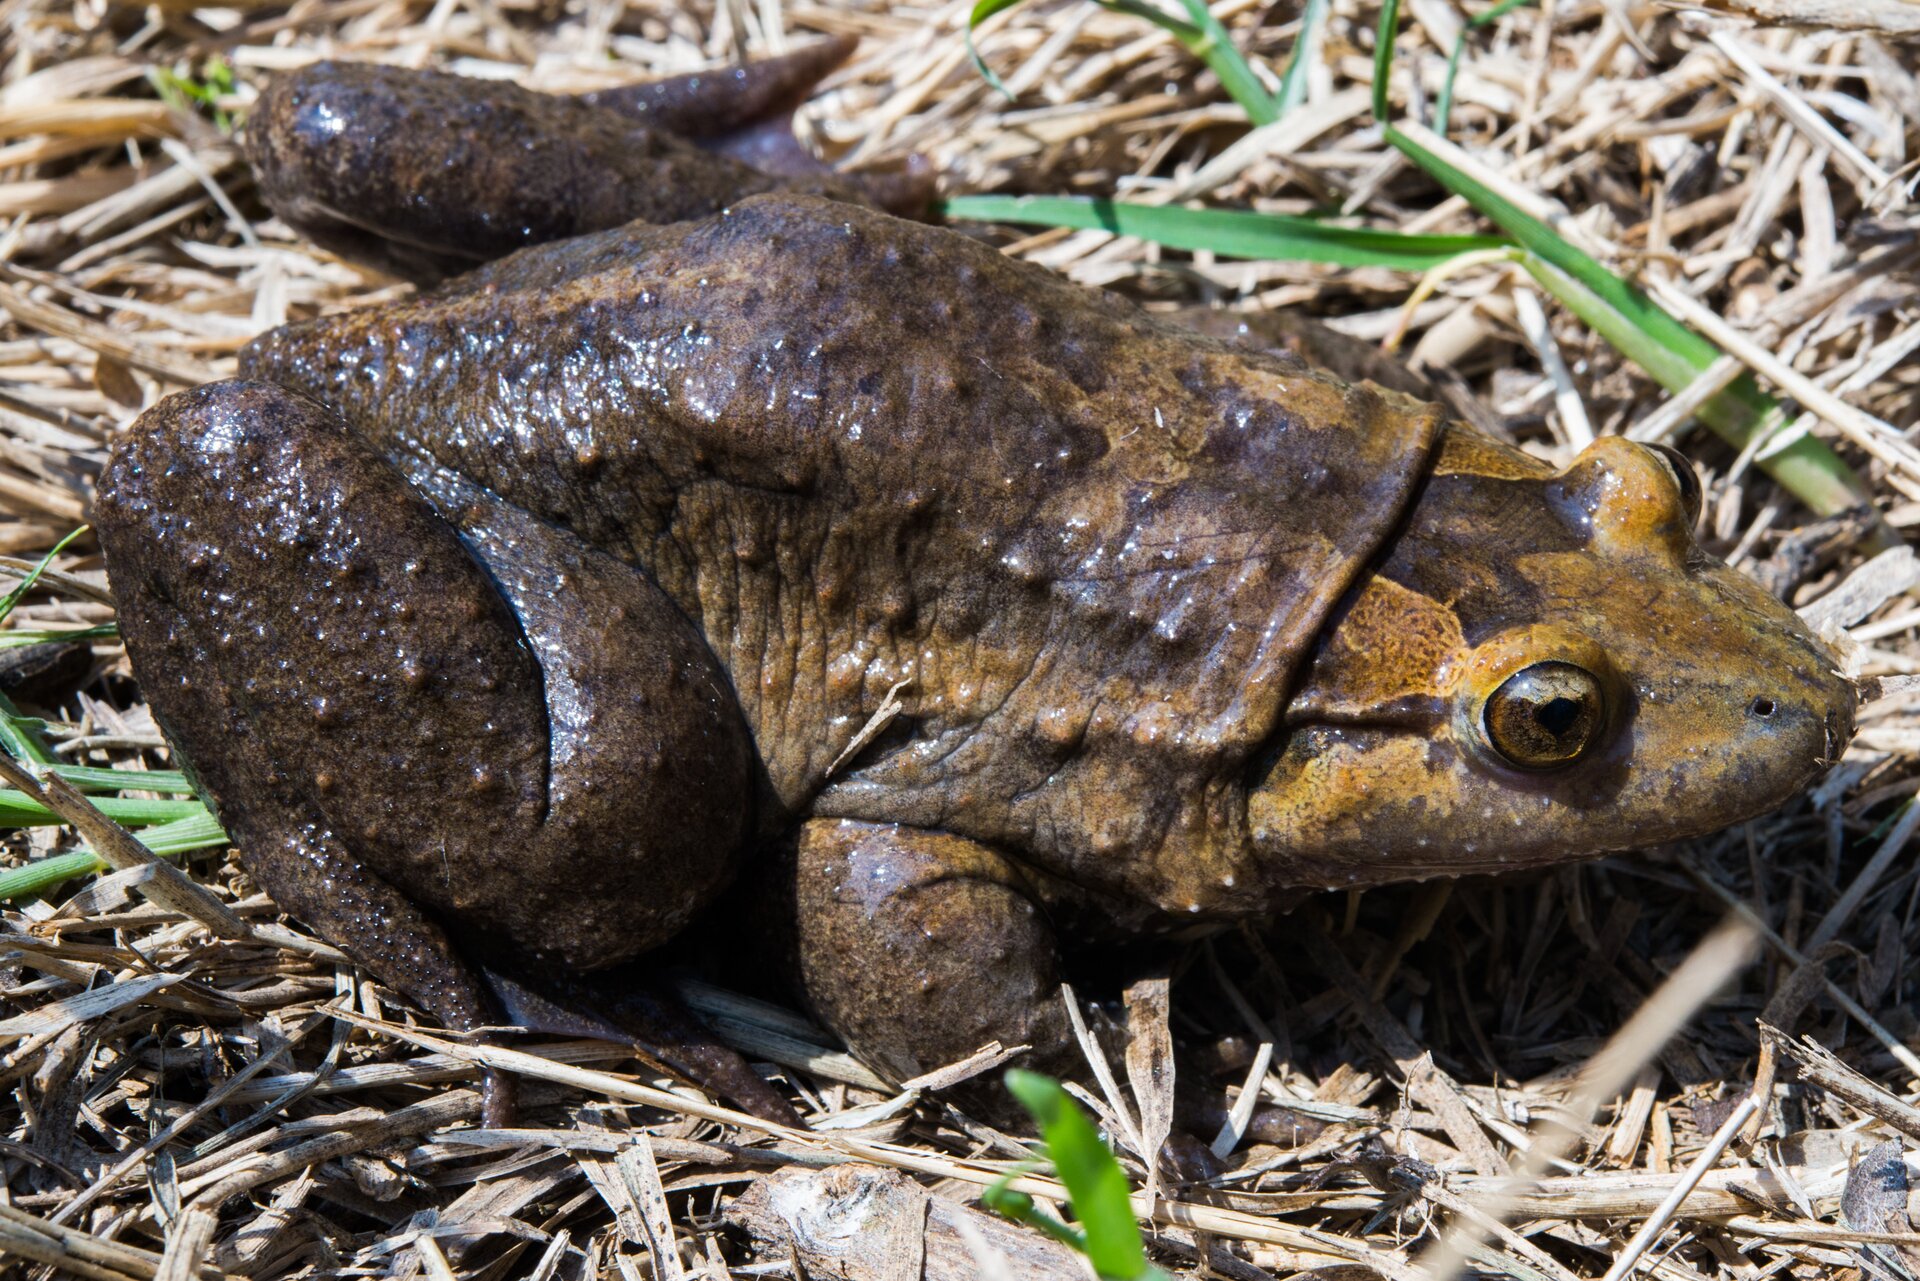 Ilustracja przedstawia tzw. "malowaną żabę" Latonia nigriventer  siedzącą na suchych źdźbłach trawy. Tylne nogi  i grzbiet płaza wyglądają jakby były ubrudzone błotem. W górnej części umaszczenie zdecydowania jaśniejsze. 